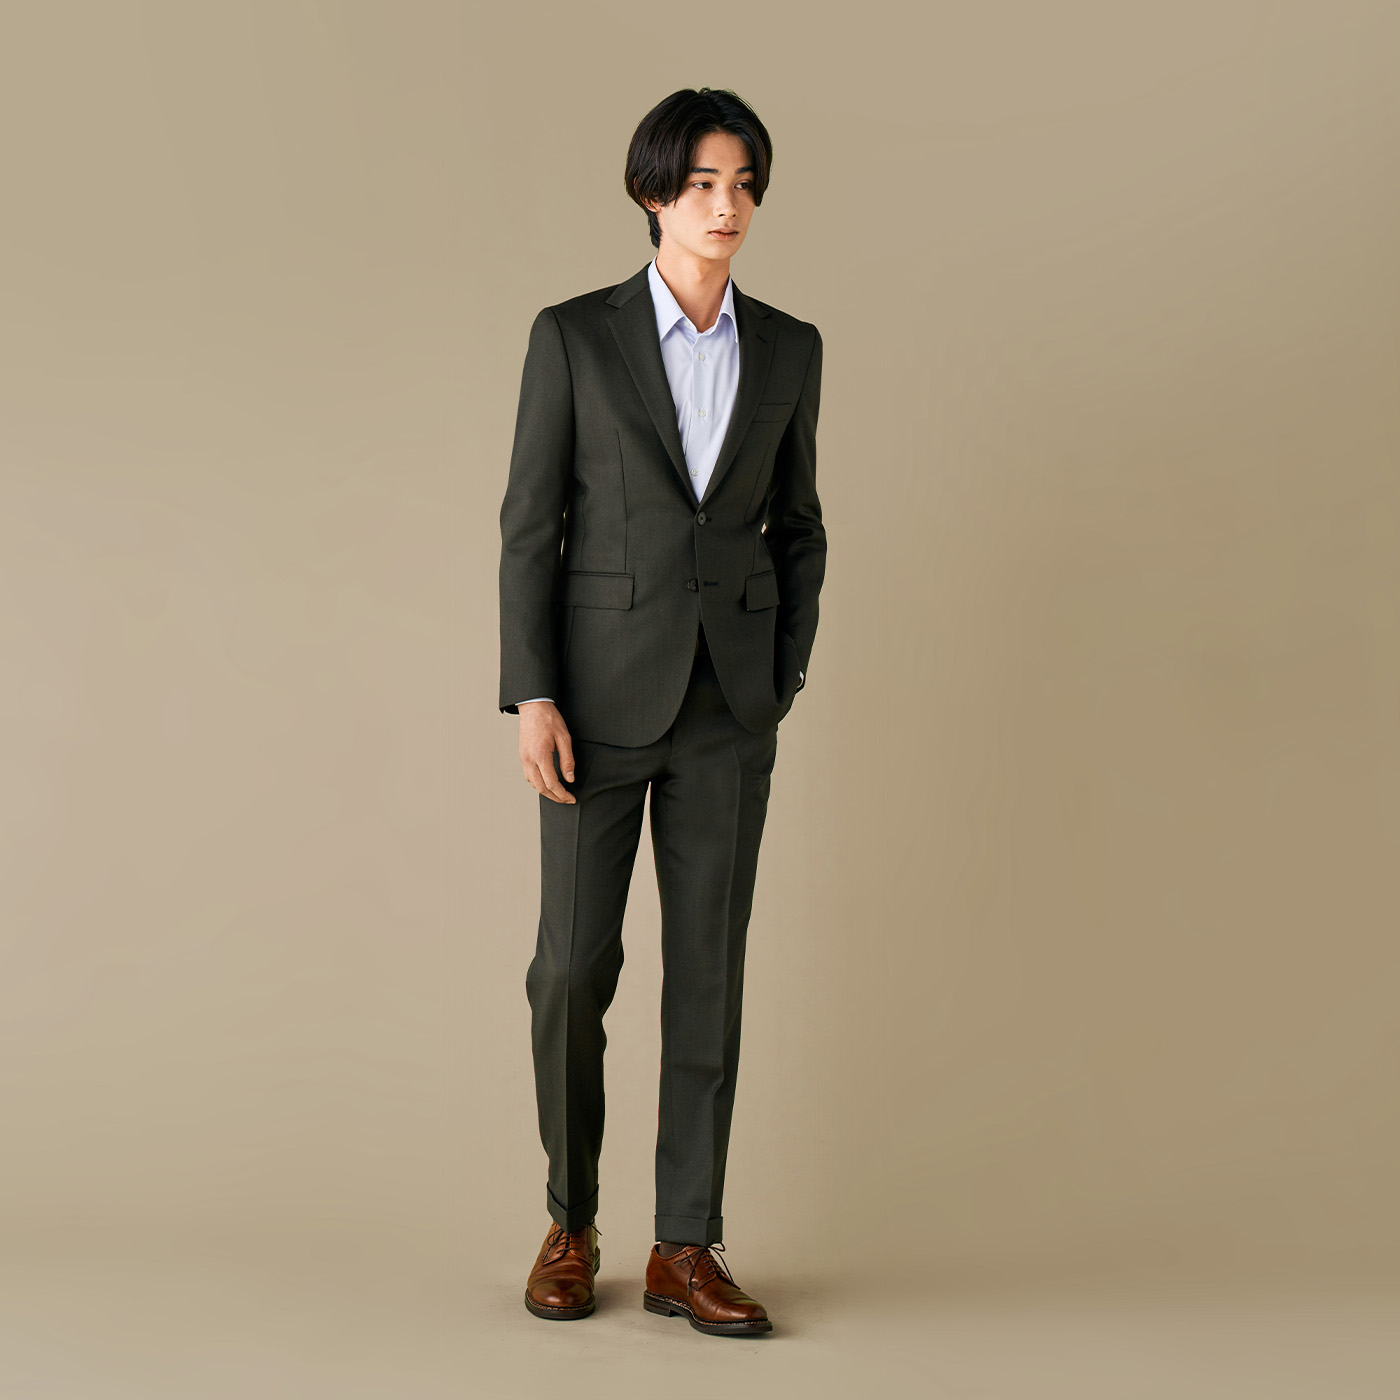 【通信販売】【vintage】セットアップ シングルスーツ カーキーブラウン ピンズ 成人式 スーツ